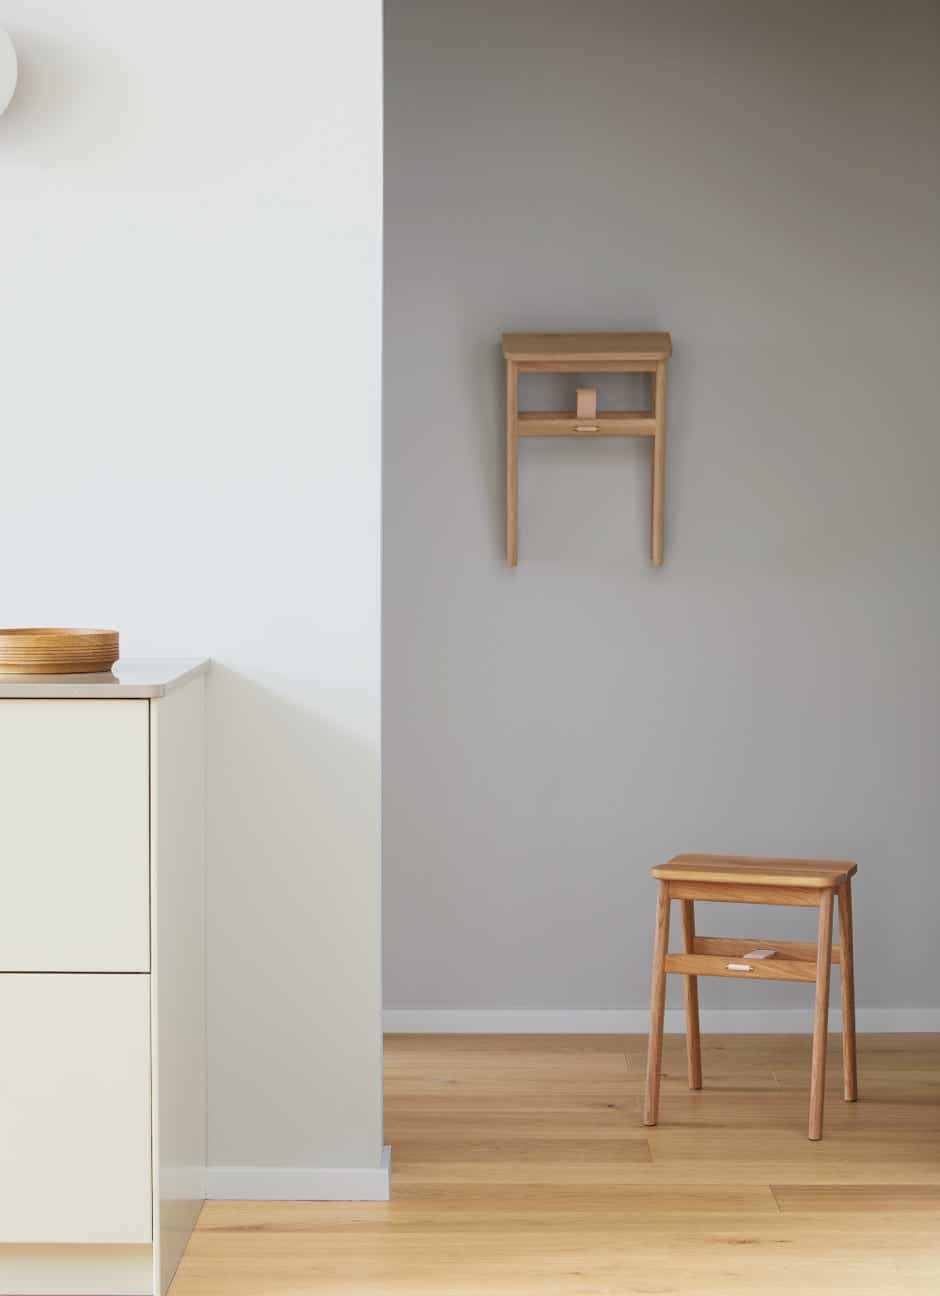 Angle foldable stool Herman Studio